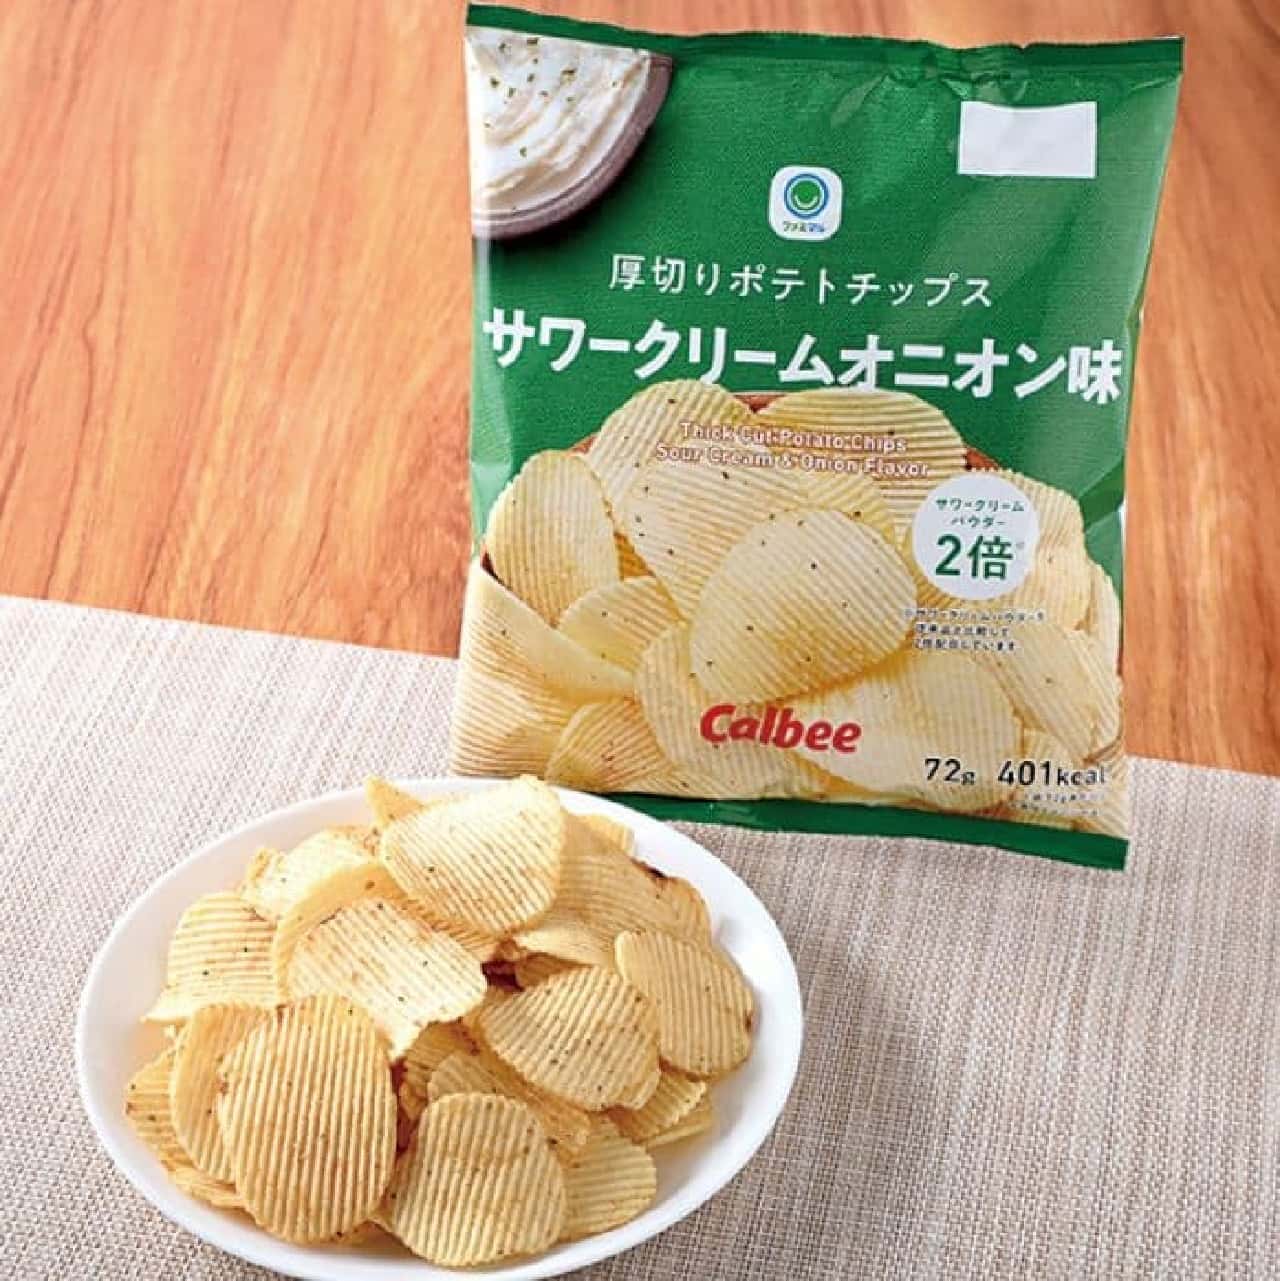 FamilyMart "Thick Cut Potato Chips Sour Cream Onion Flavor